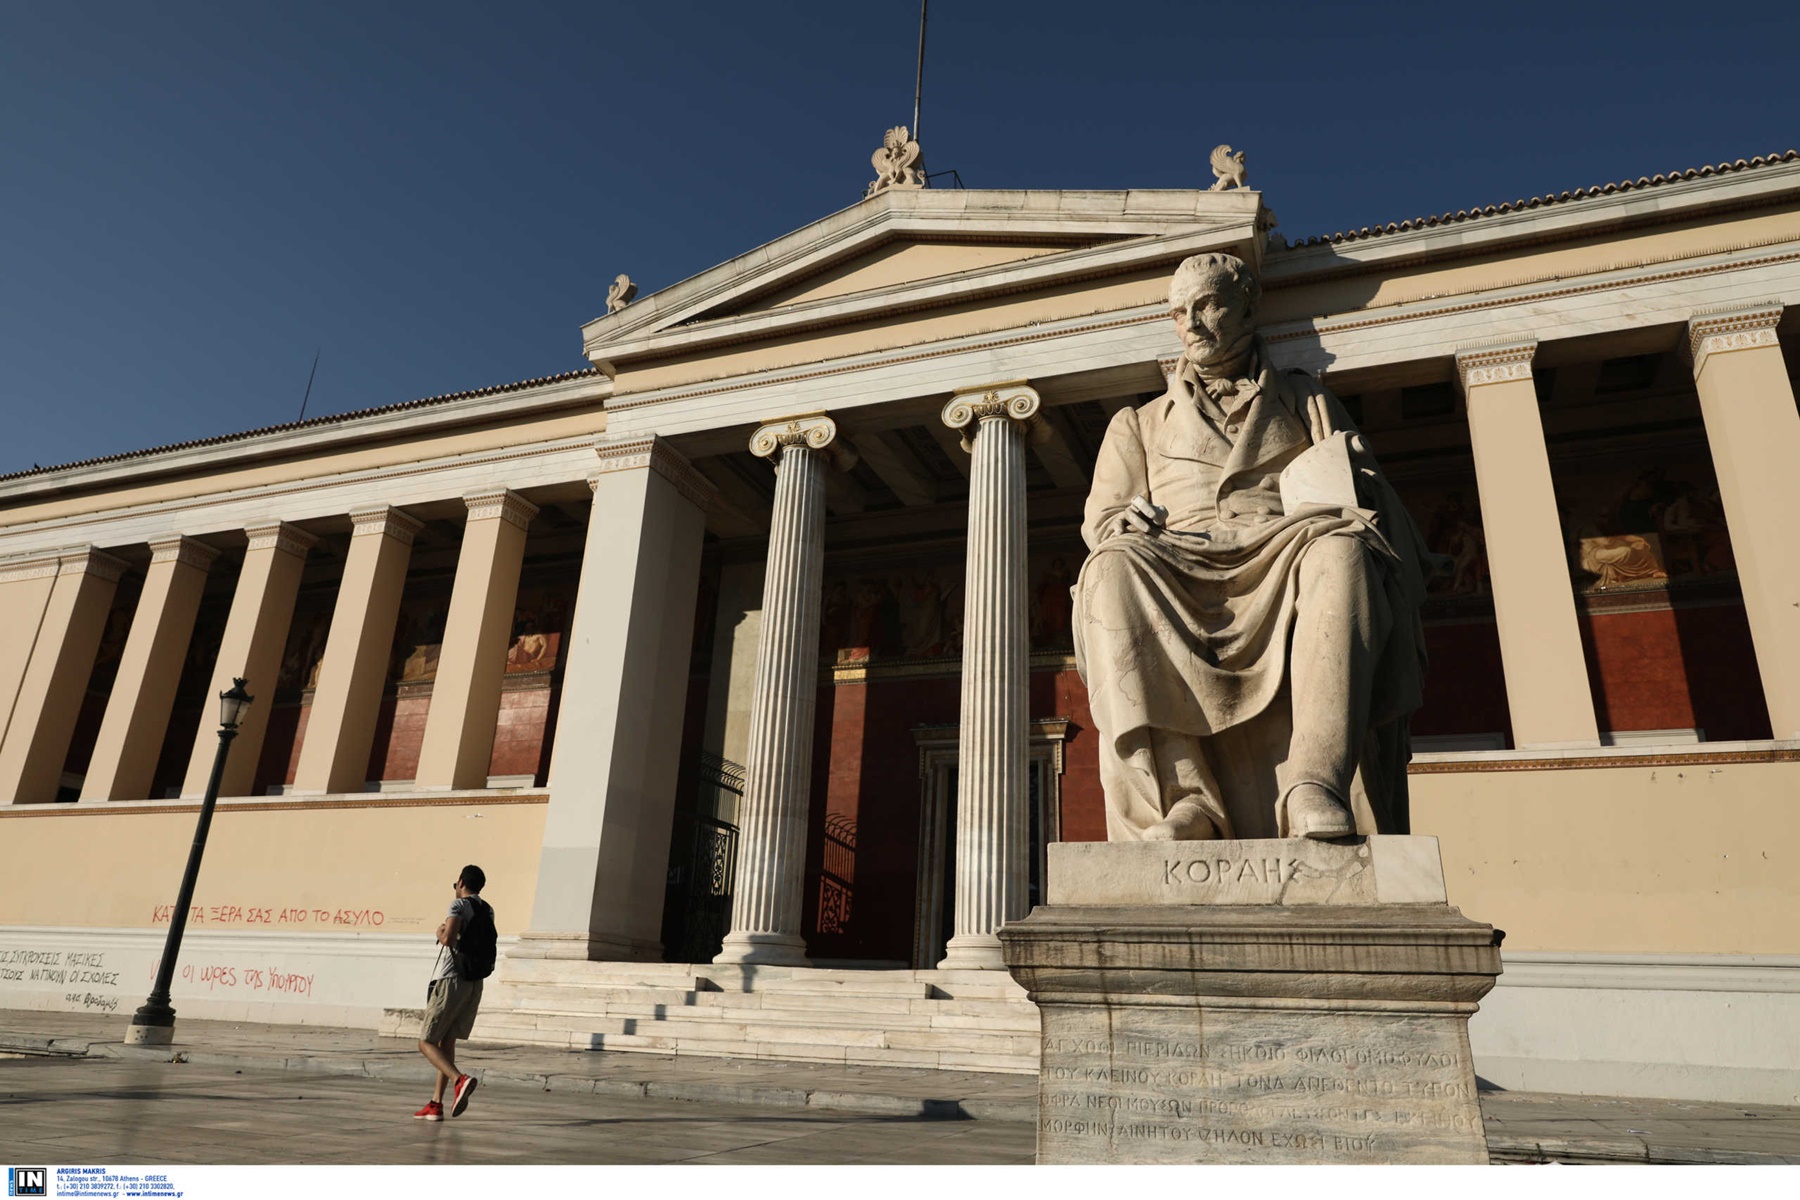 ΕΚΠΑ: Στην 1η θέση μεταξύ των ελληνικών πανεπιστημίων στην διεθνή κατάταξη «Times Higher Education World University Rankings»